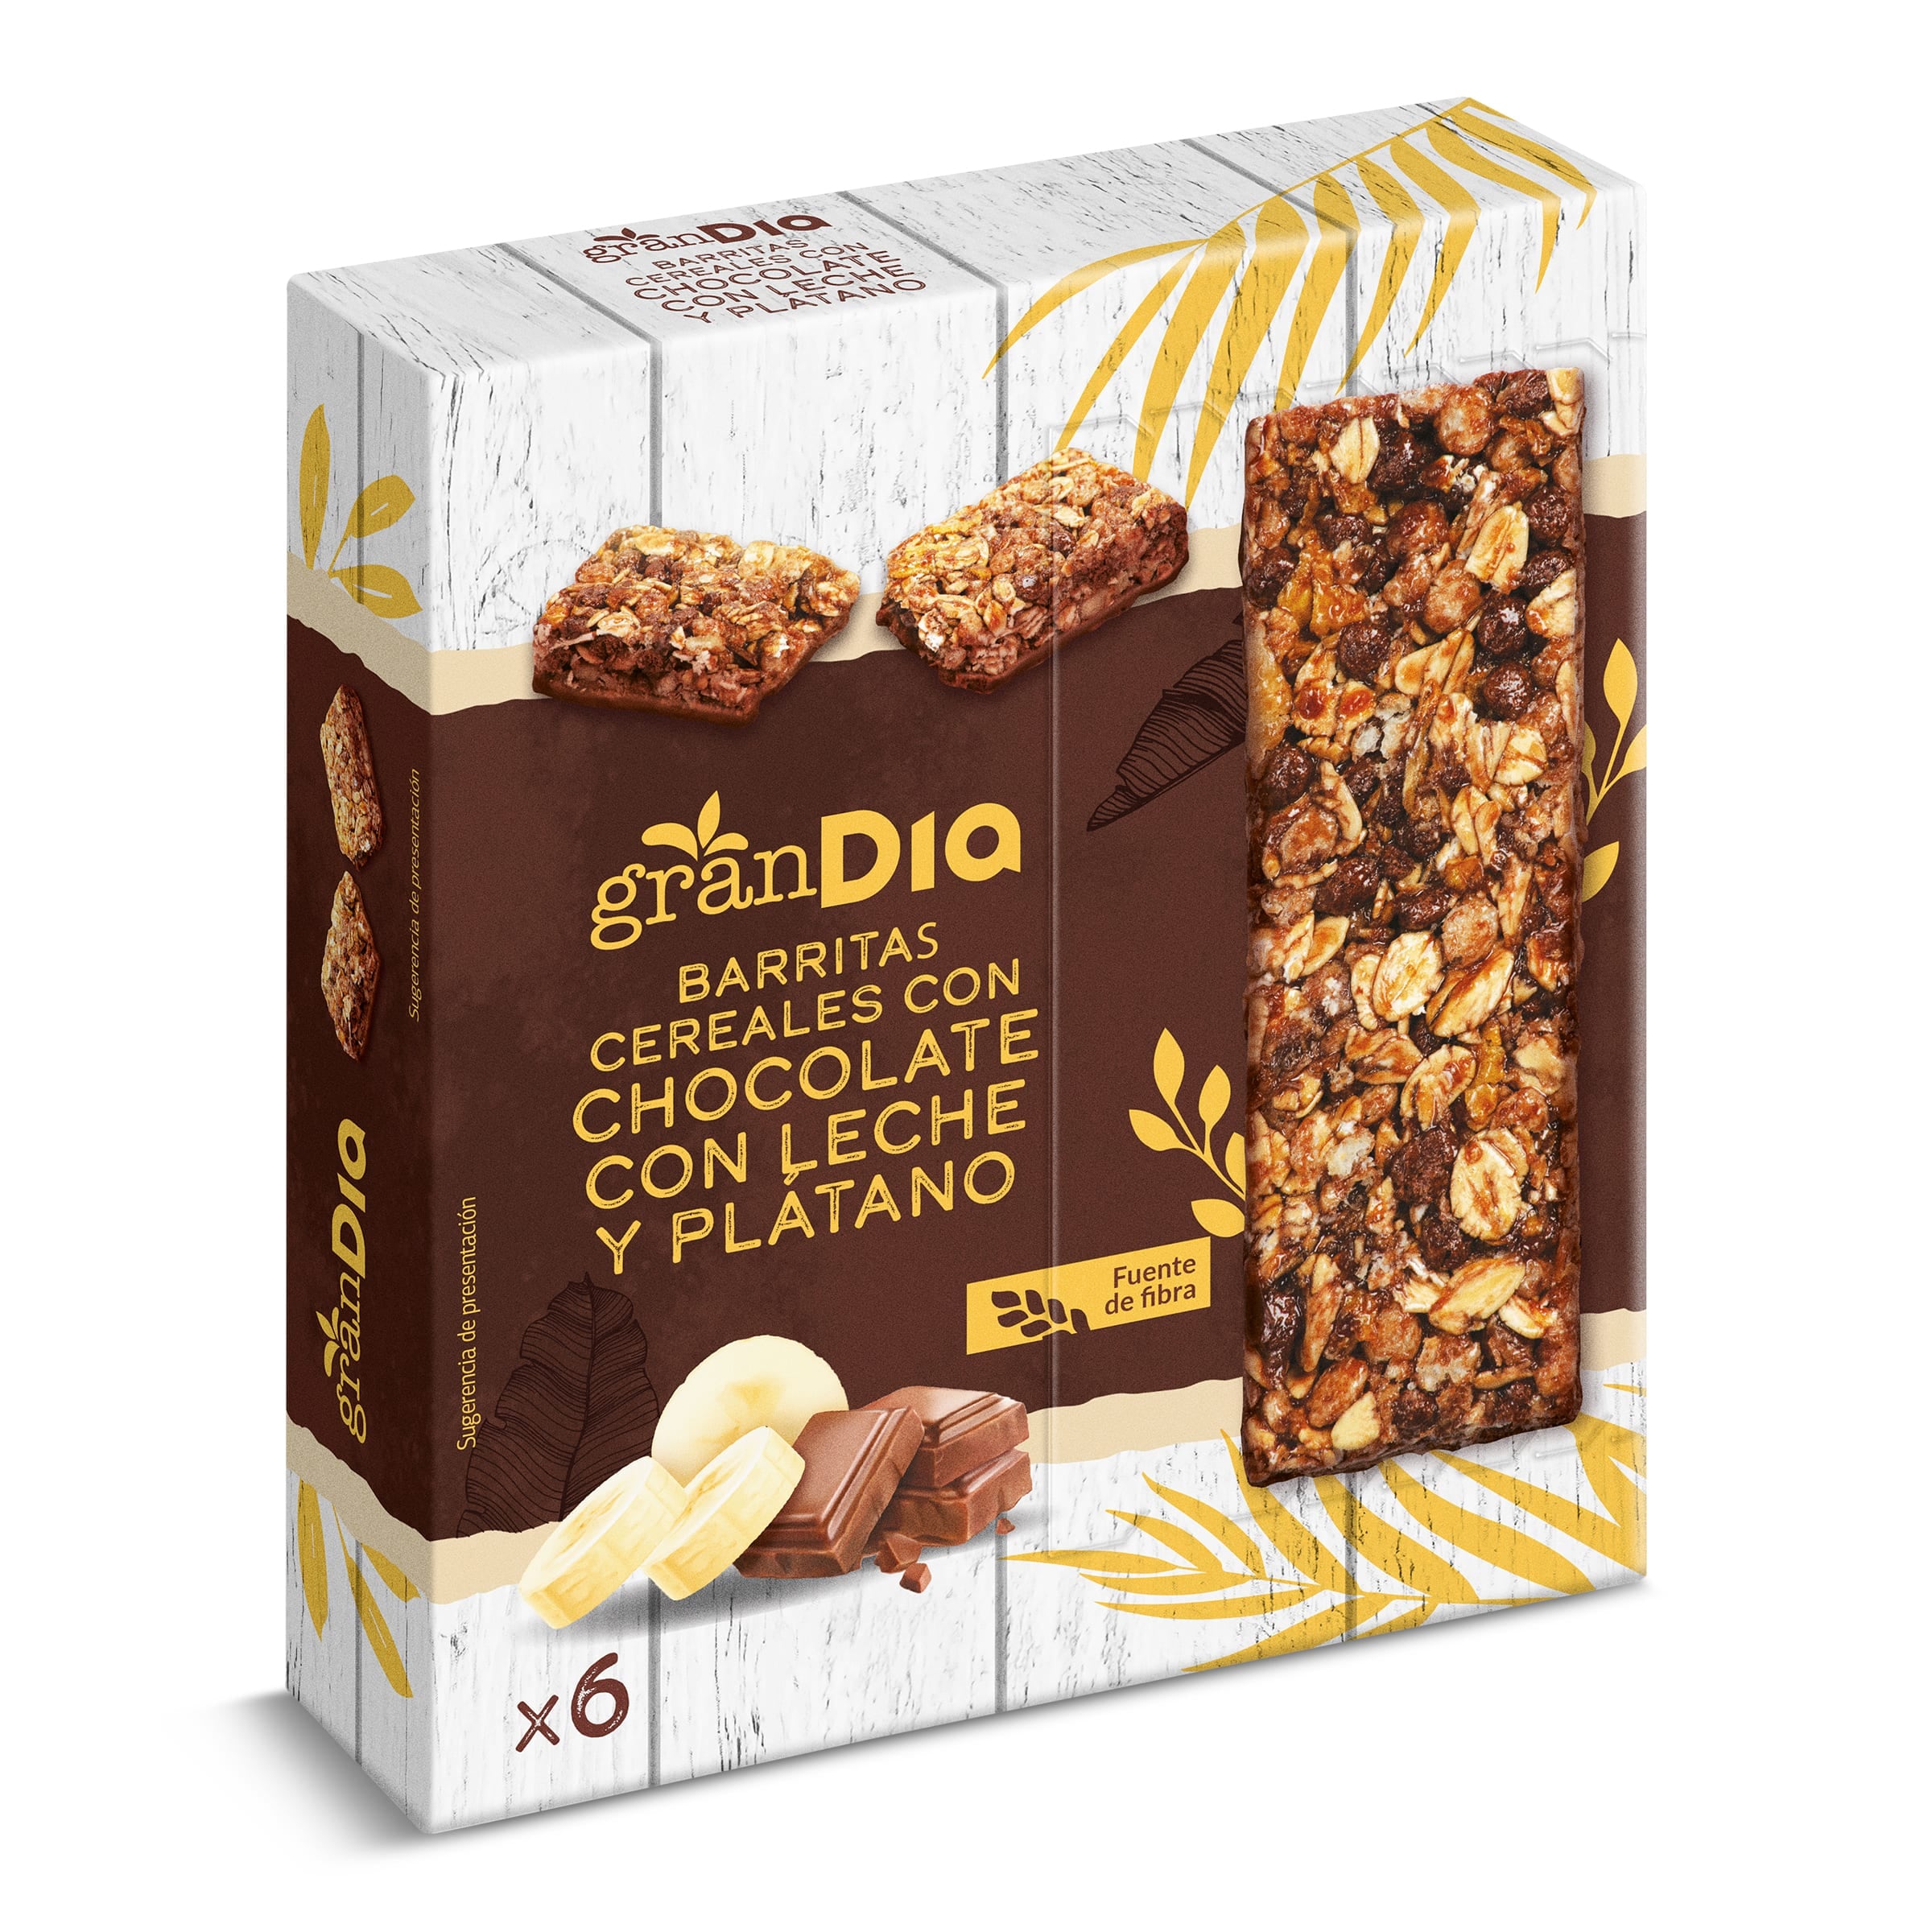 Barritas de cereales plátano y chocolate con leche Gran Dia caja 150 g -  Supermercados DIA